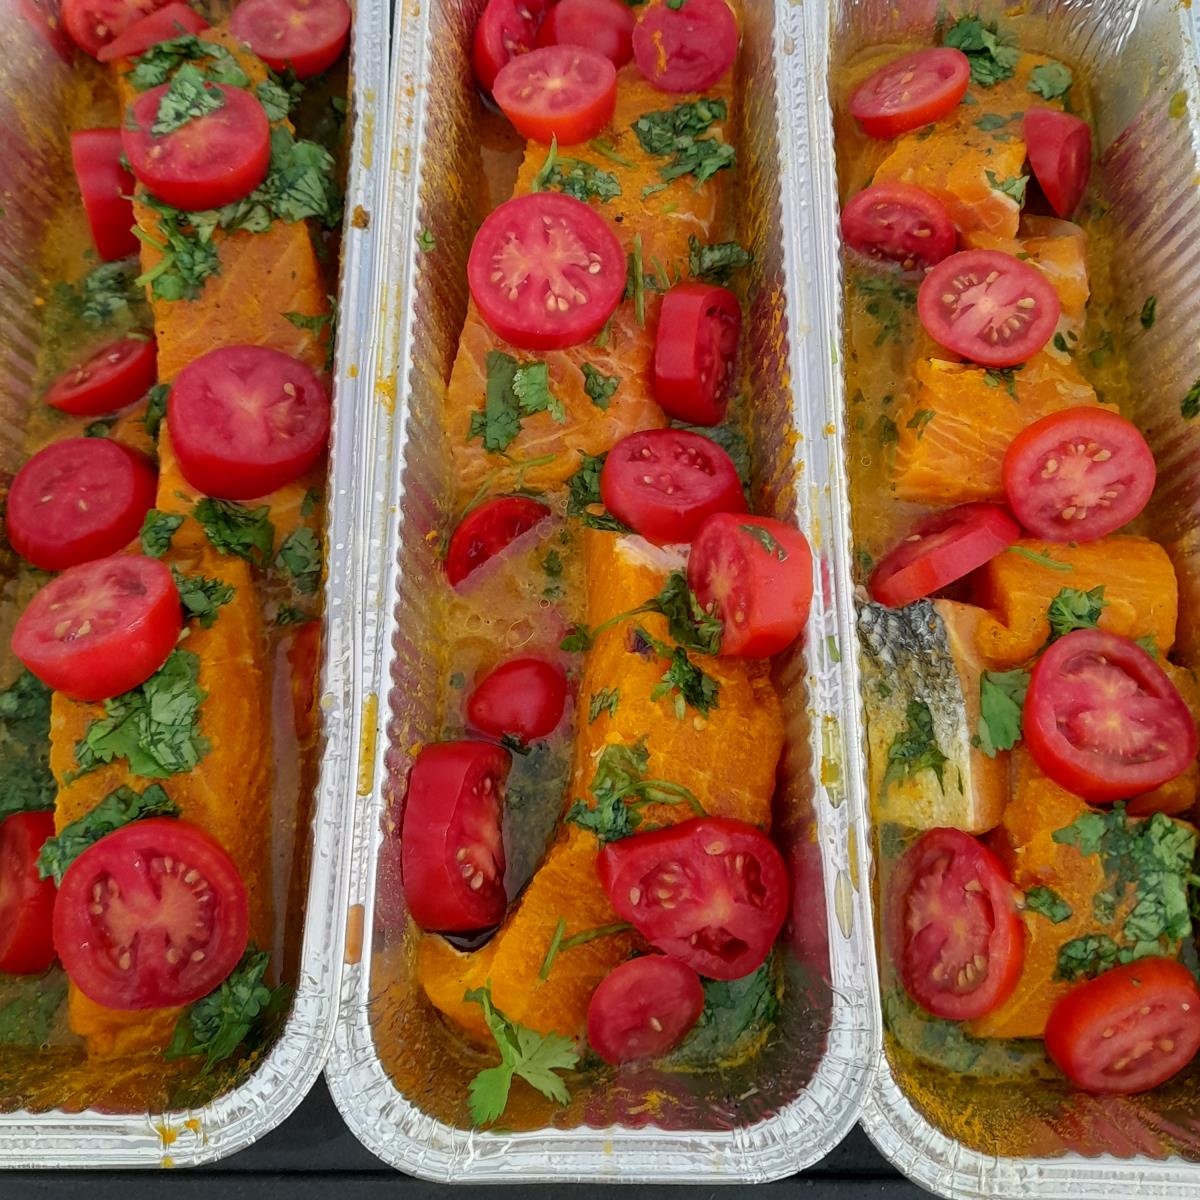  דג סלומון בתנור עם עגבניות שרי ומלא כוסברה
בטיבול עדין וטעיםם..!